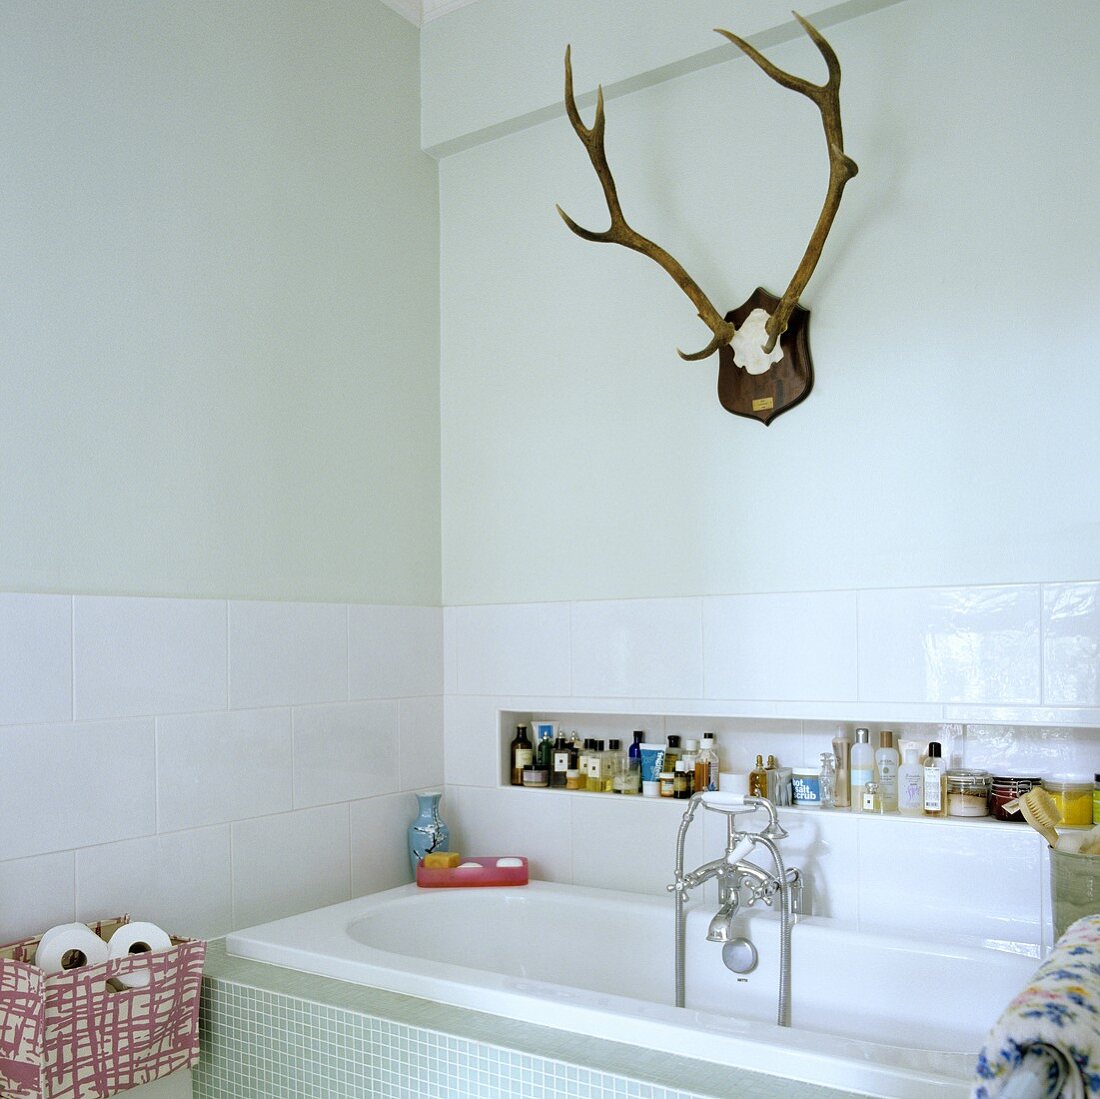 Hirschgeweih im weissen Bad mit Badewanne und Badutensilien in Nische